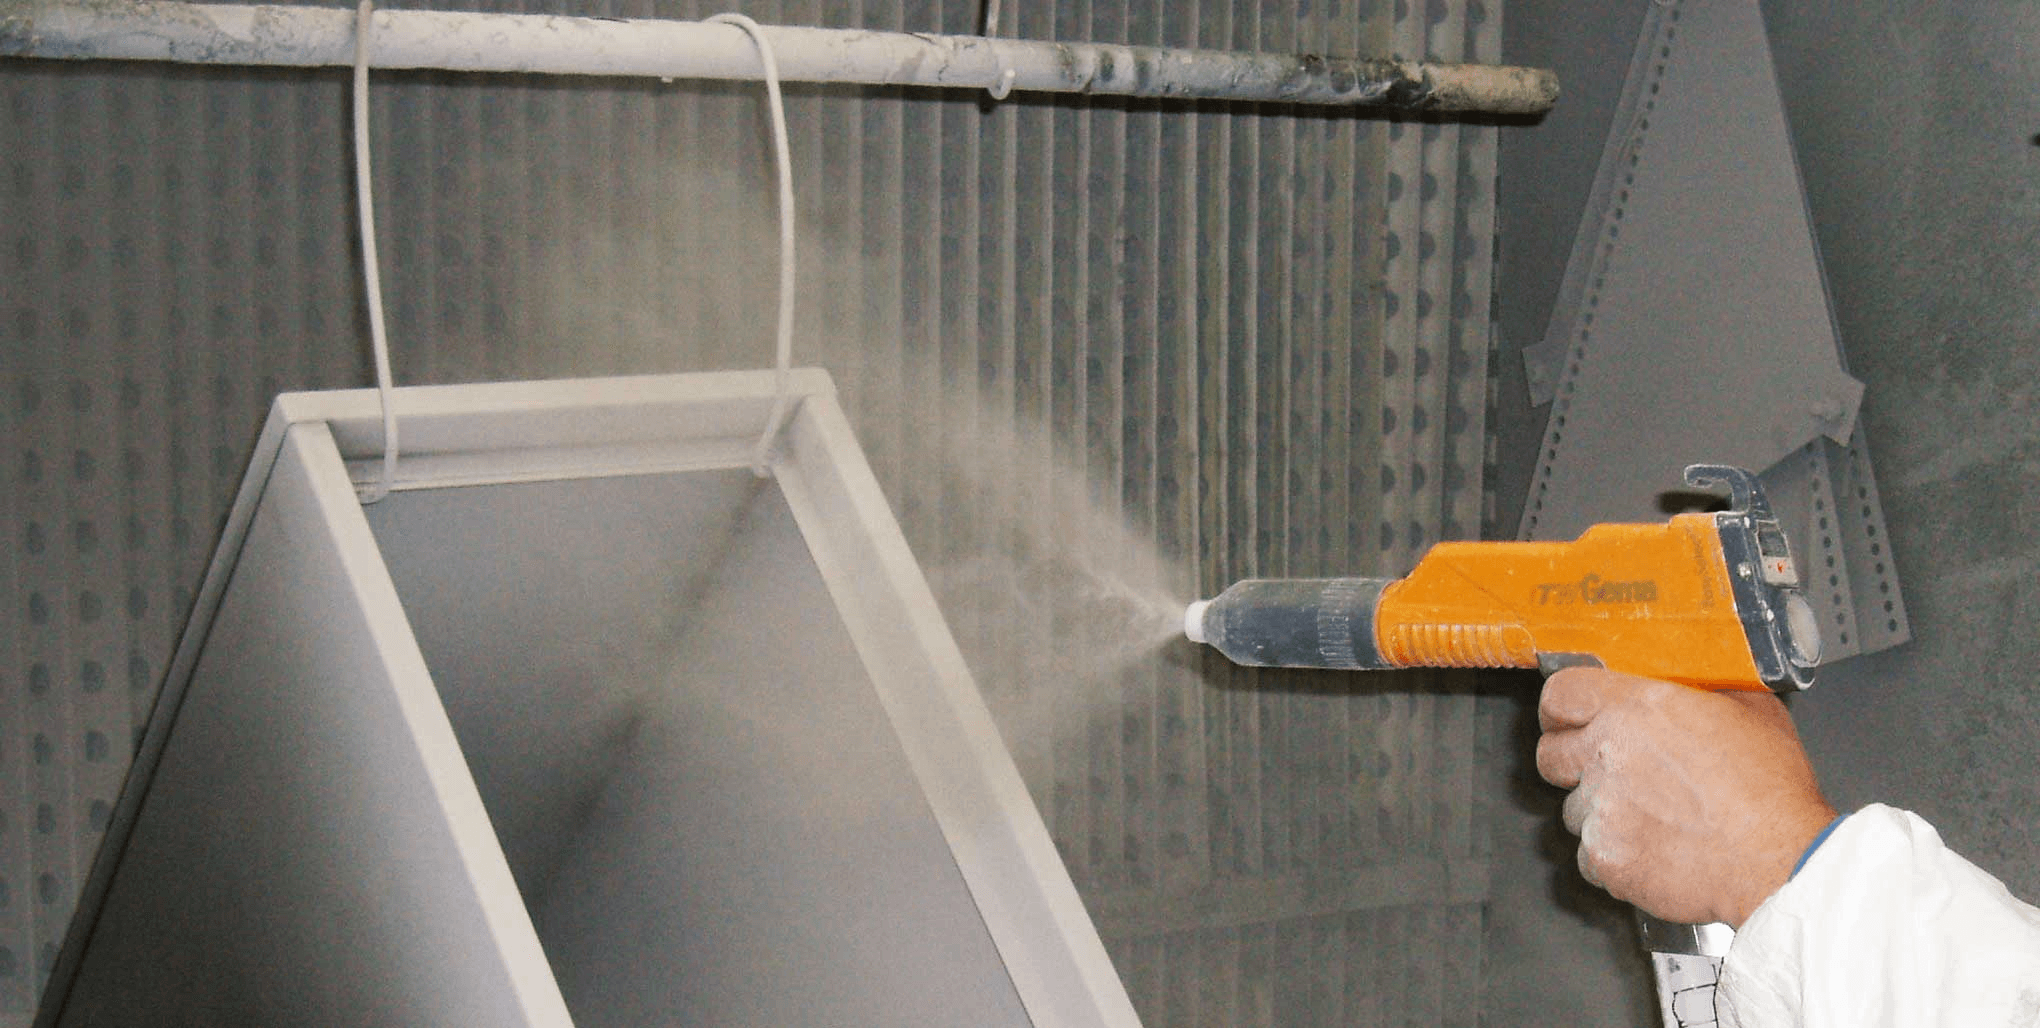 Powder coating